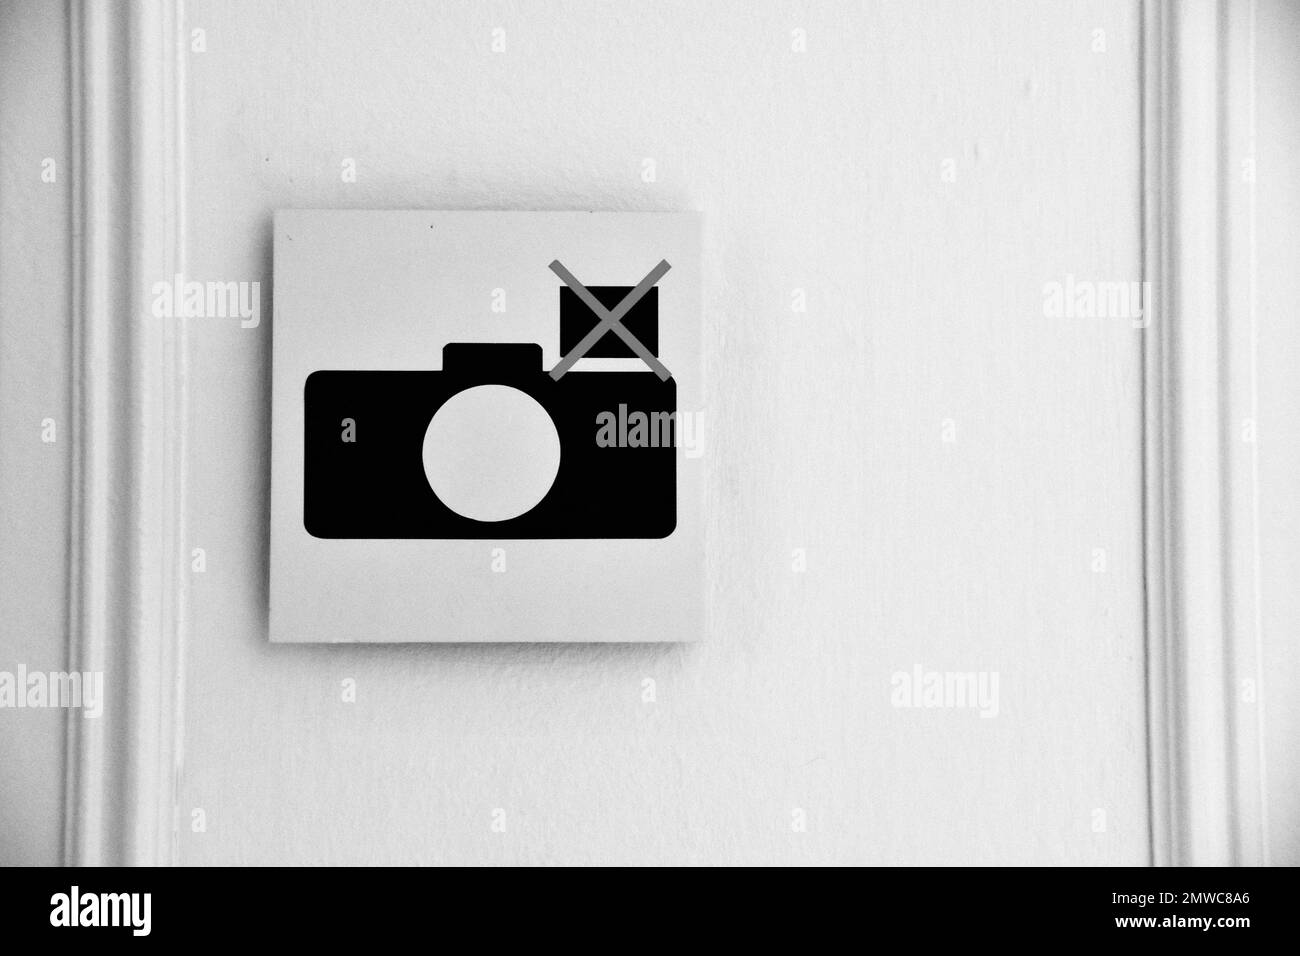 Logo d'une caméra sur un mur blanc, pictogramme de la caméra, symbole de la caméra Banque D'Images